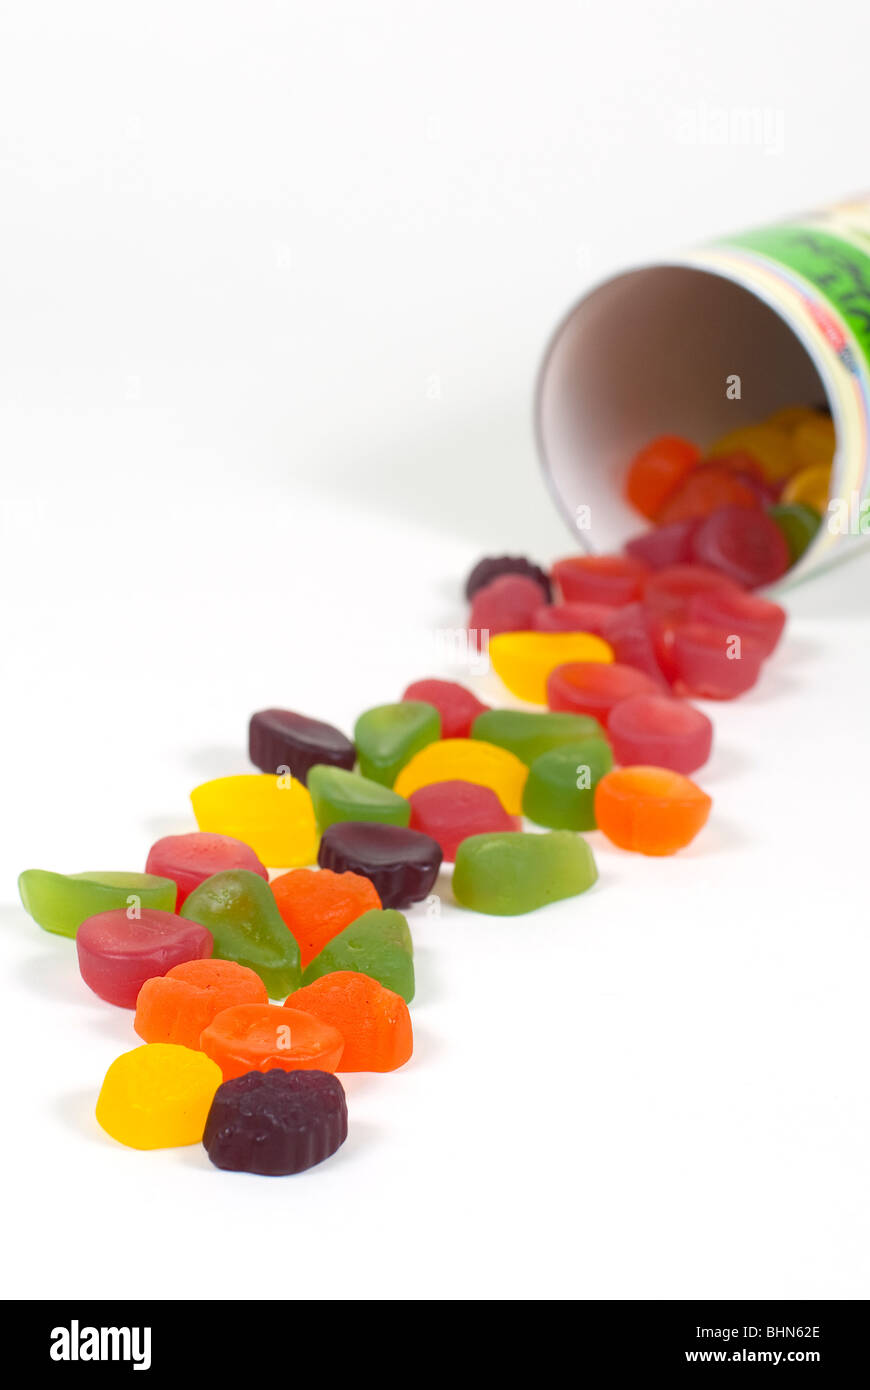 Bonbons colorés empilés sur une table Banque D'Images